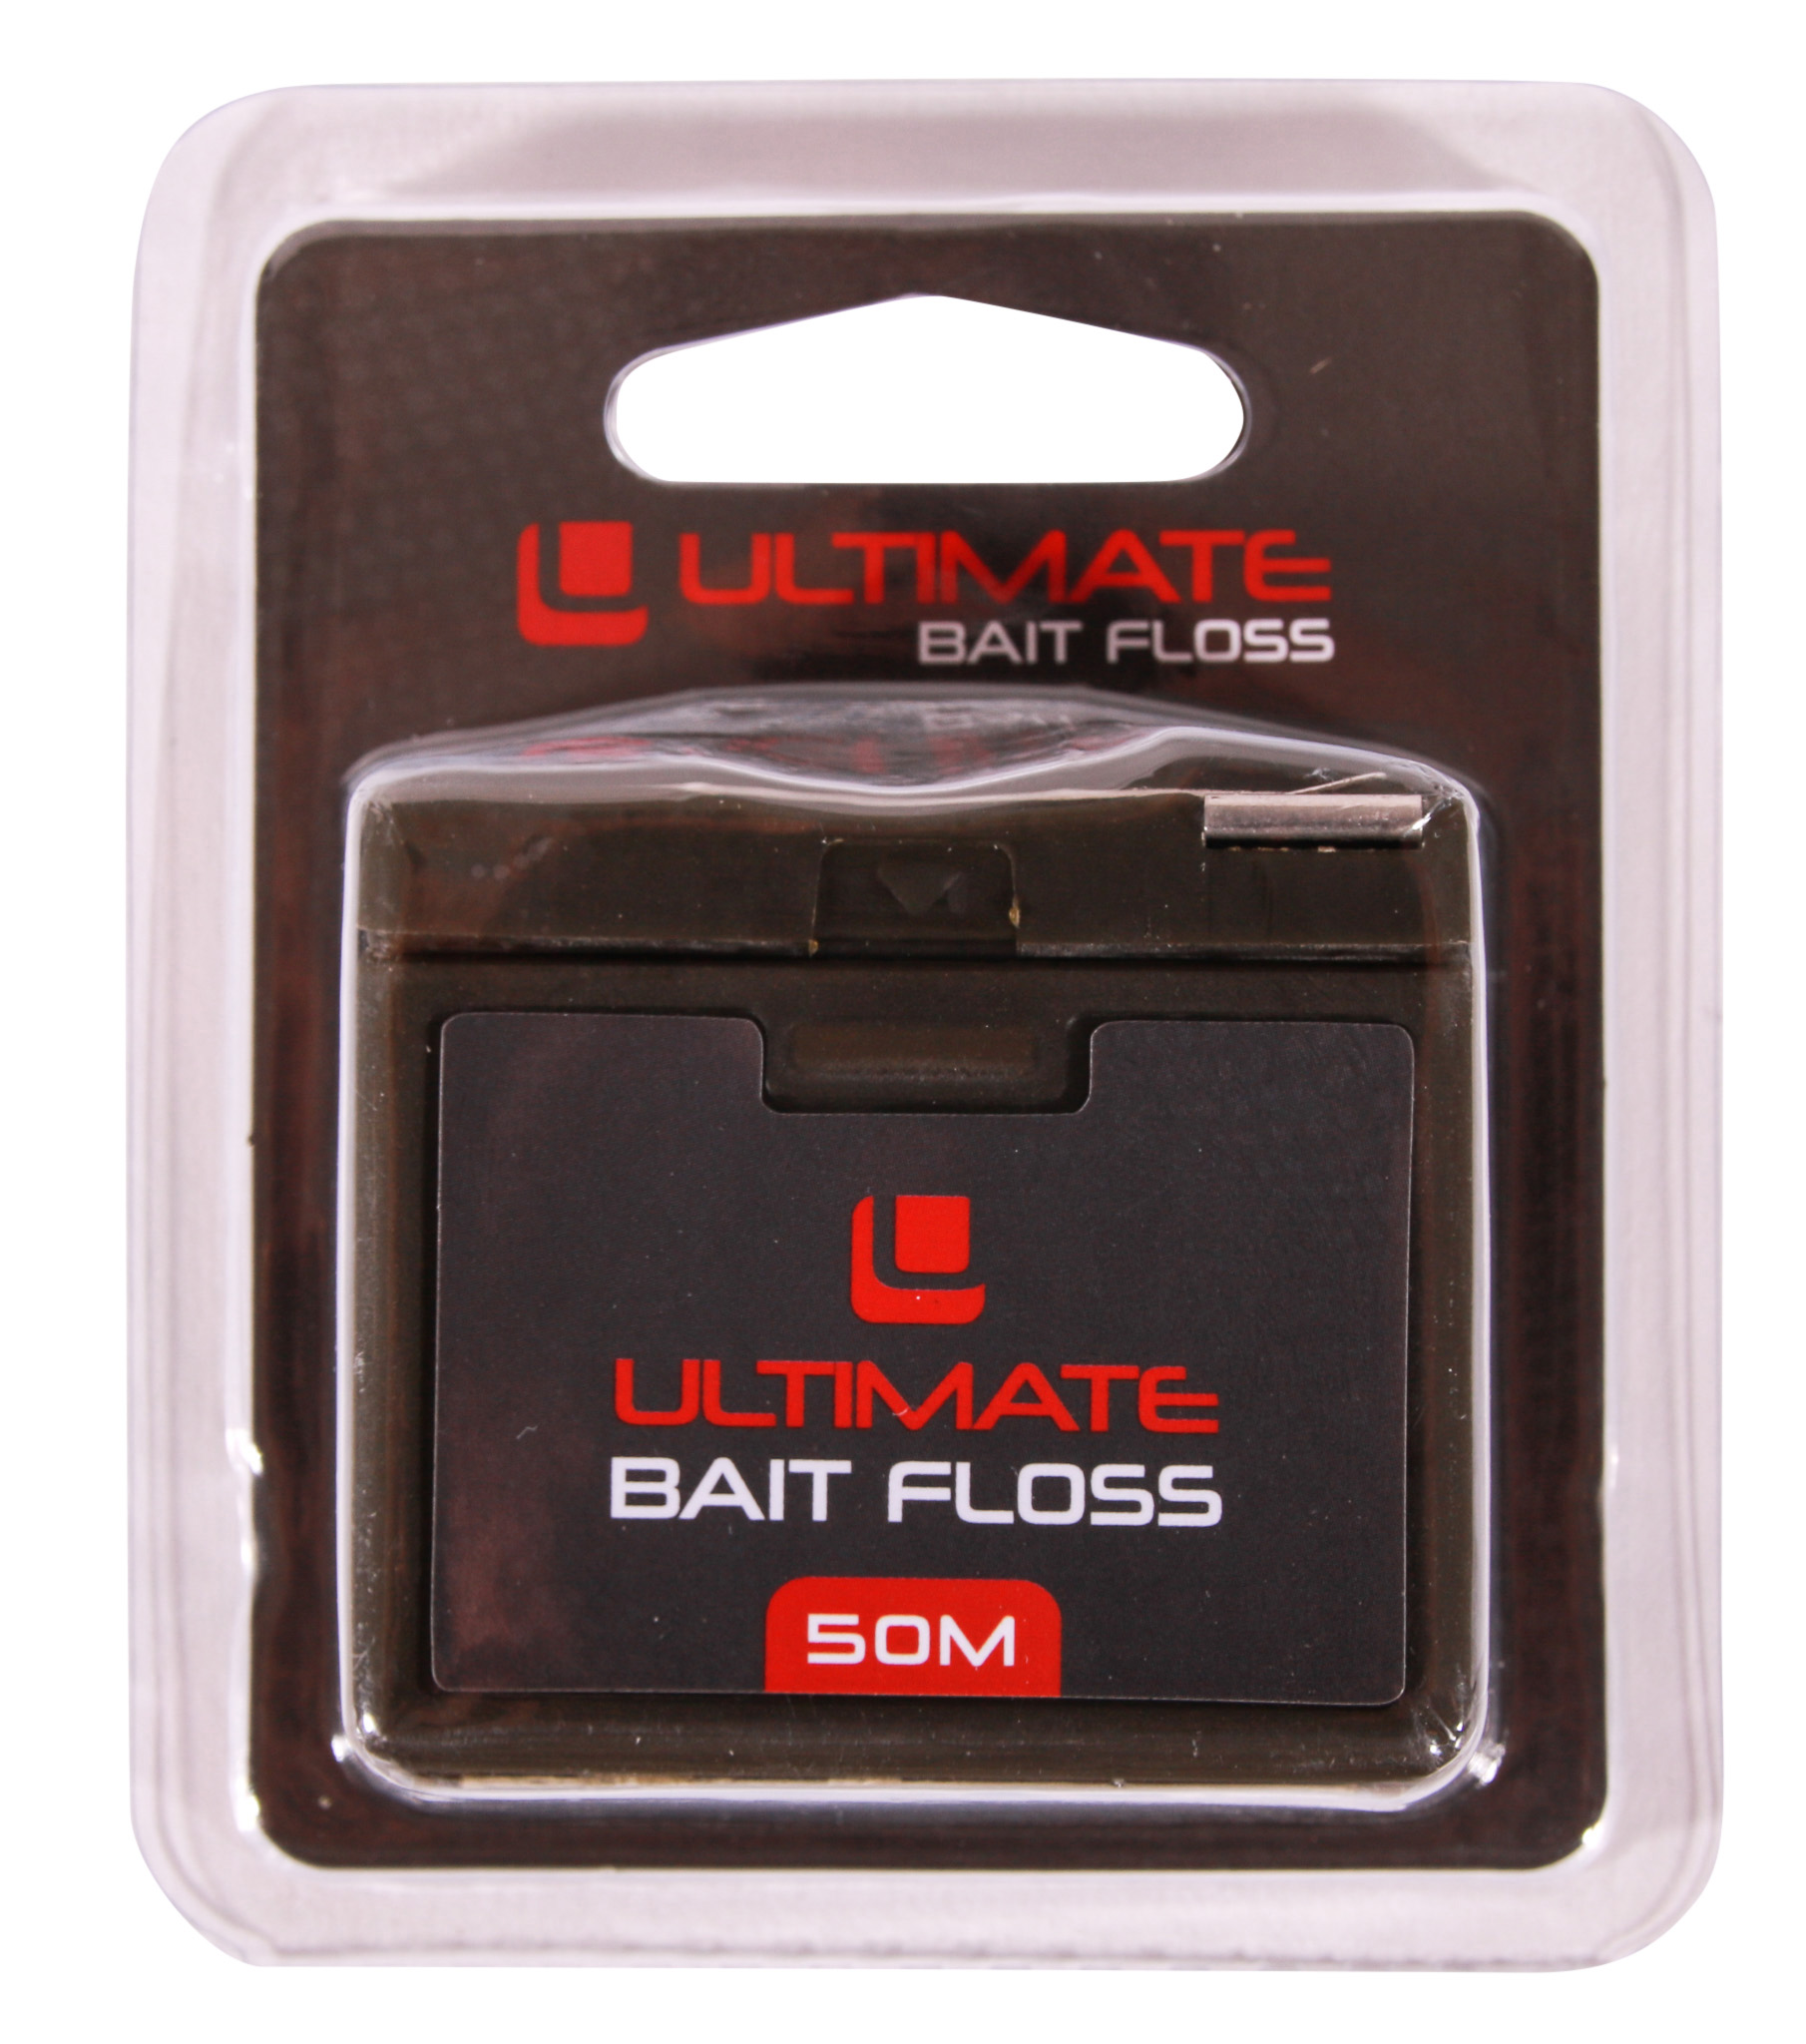 Ultimate Bait Floss incl. Dispenser (50m)